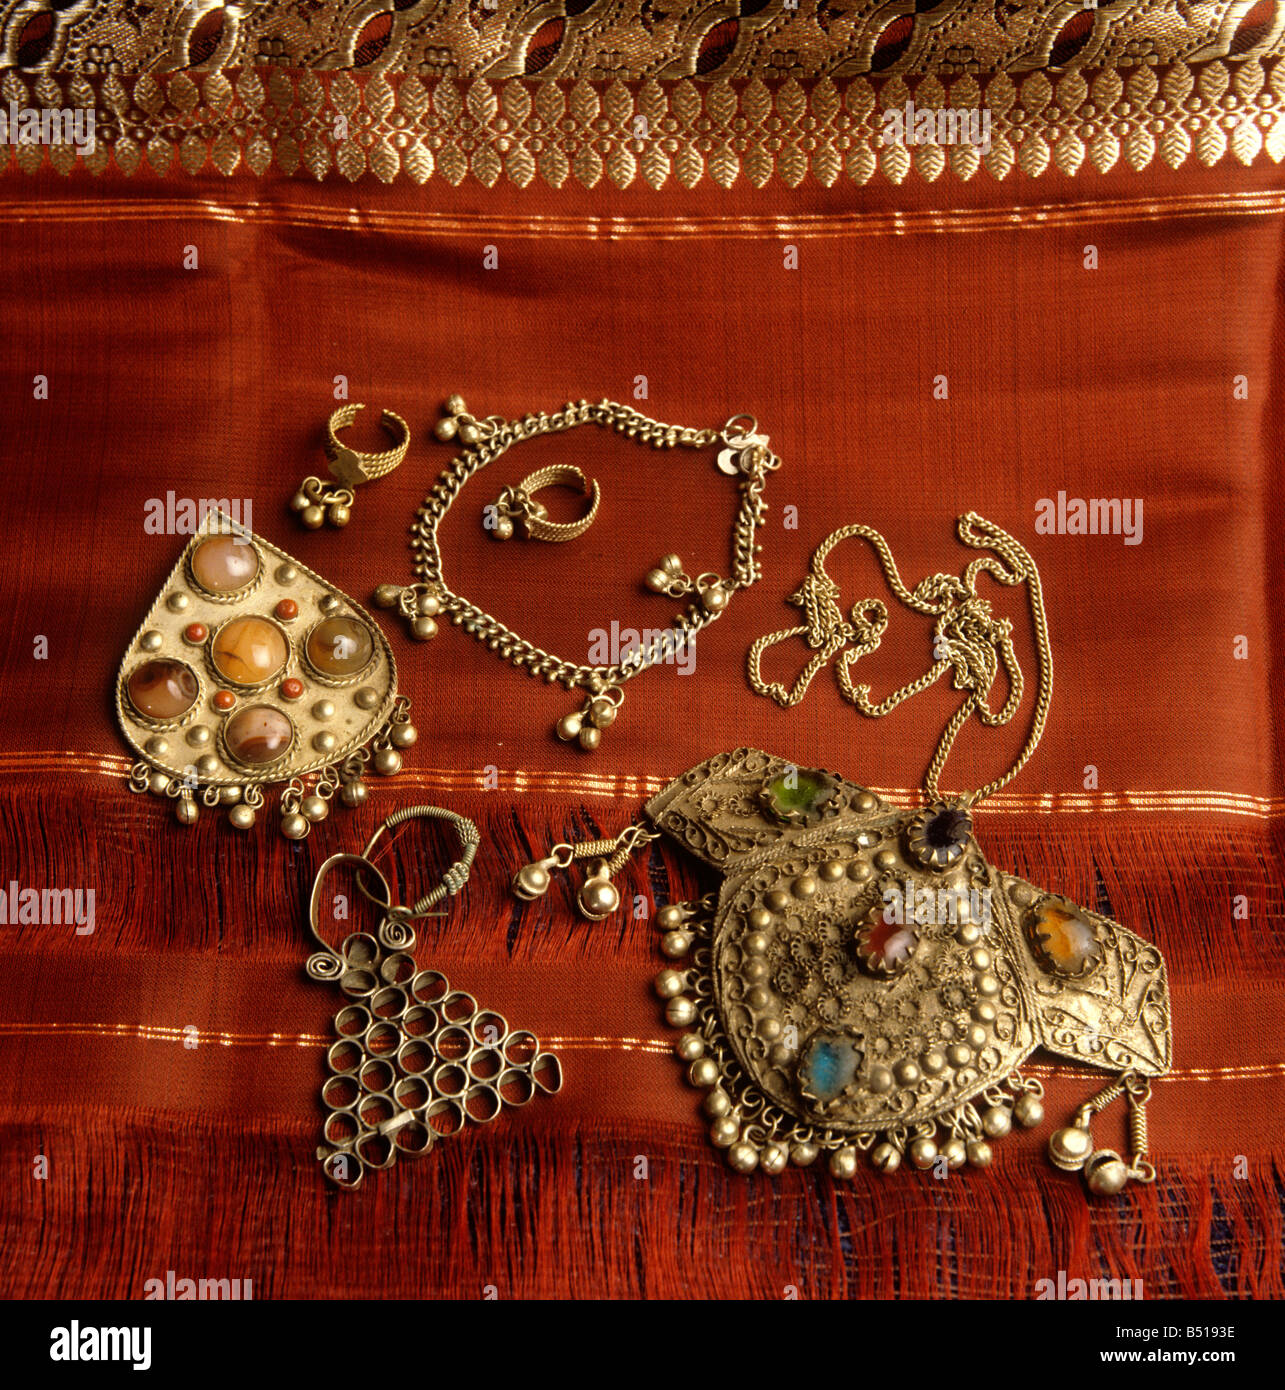 Artigianato Indiano sud gioielli indiani e Mysore sari di seta con oro  bordo ricamato Foto stock - Alamy